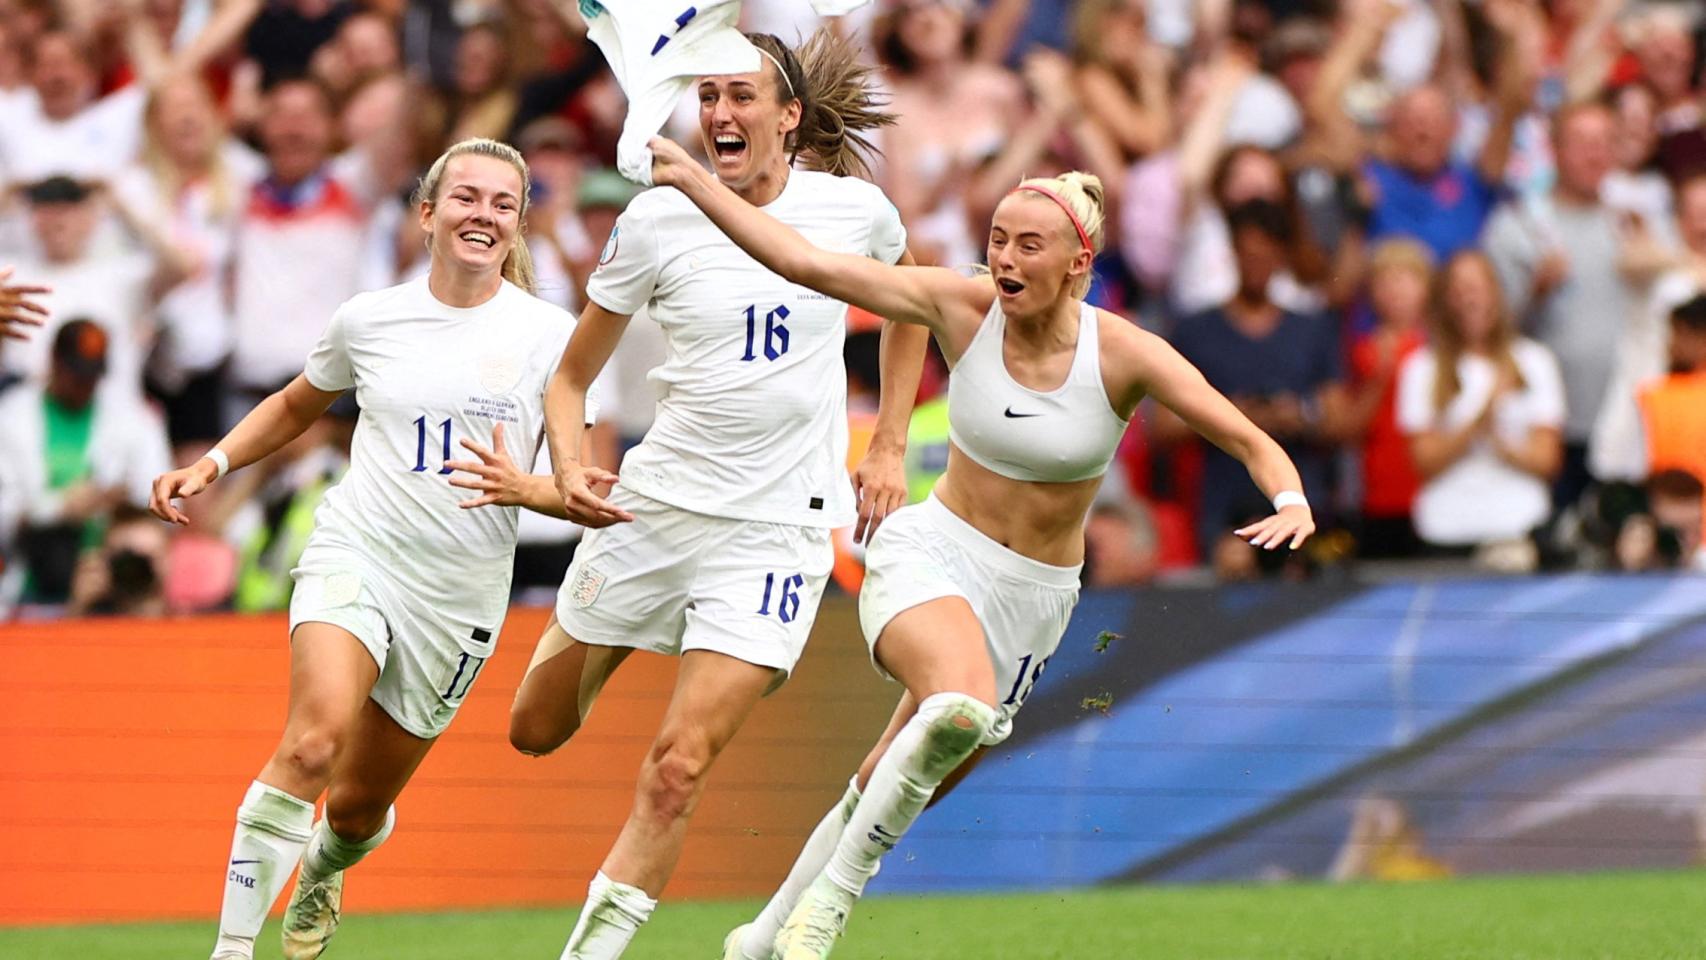 El deportivo adaptado, aliado secreto de selección femenina de fútbol inglesa